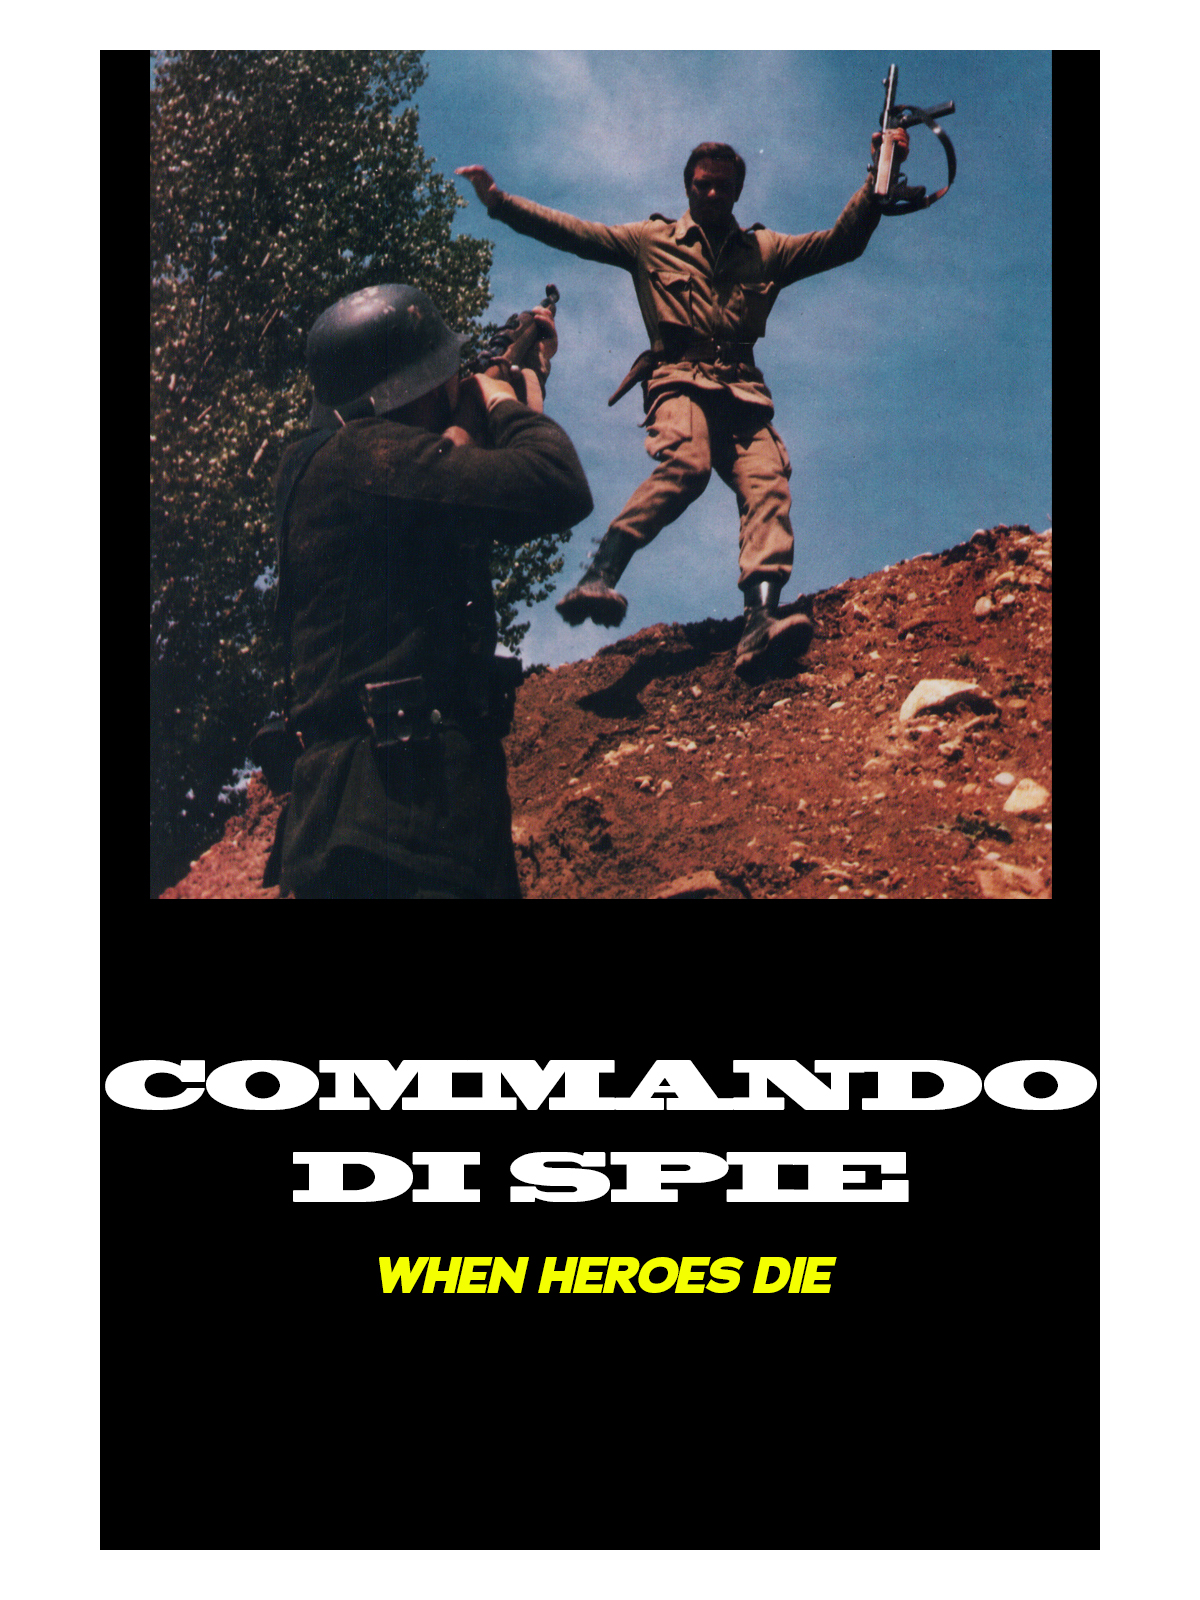 When Heroes Die